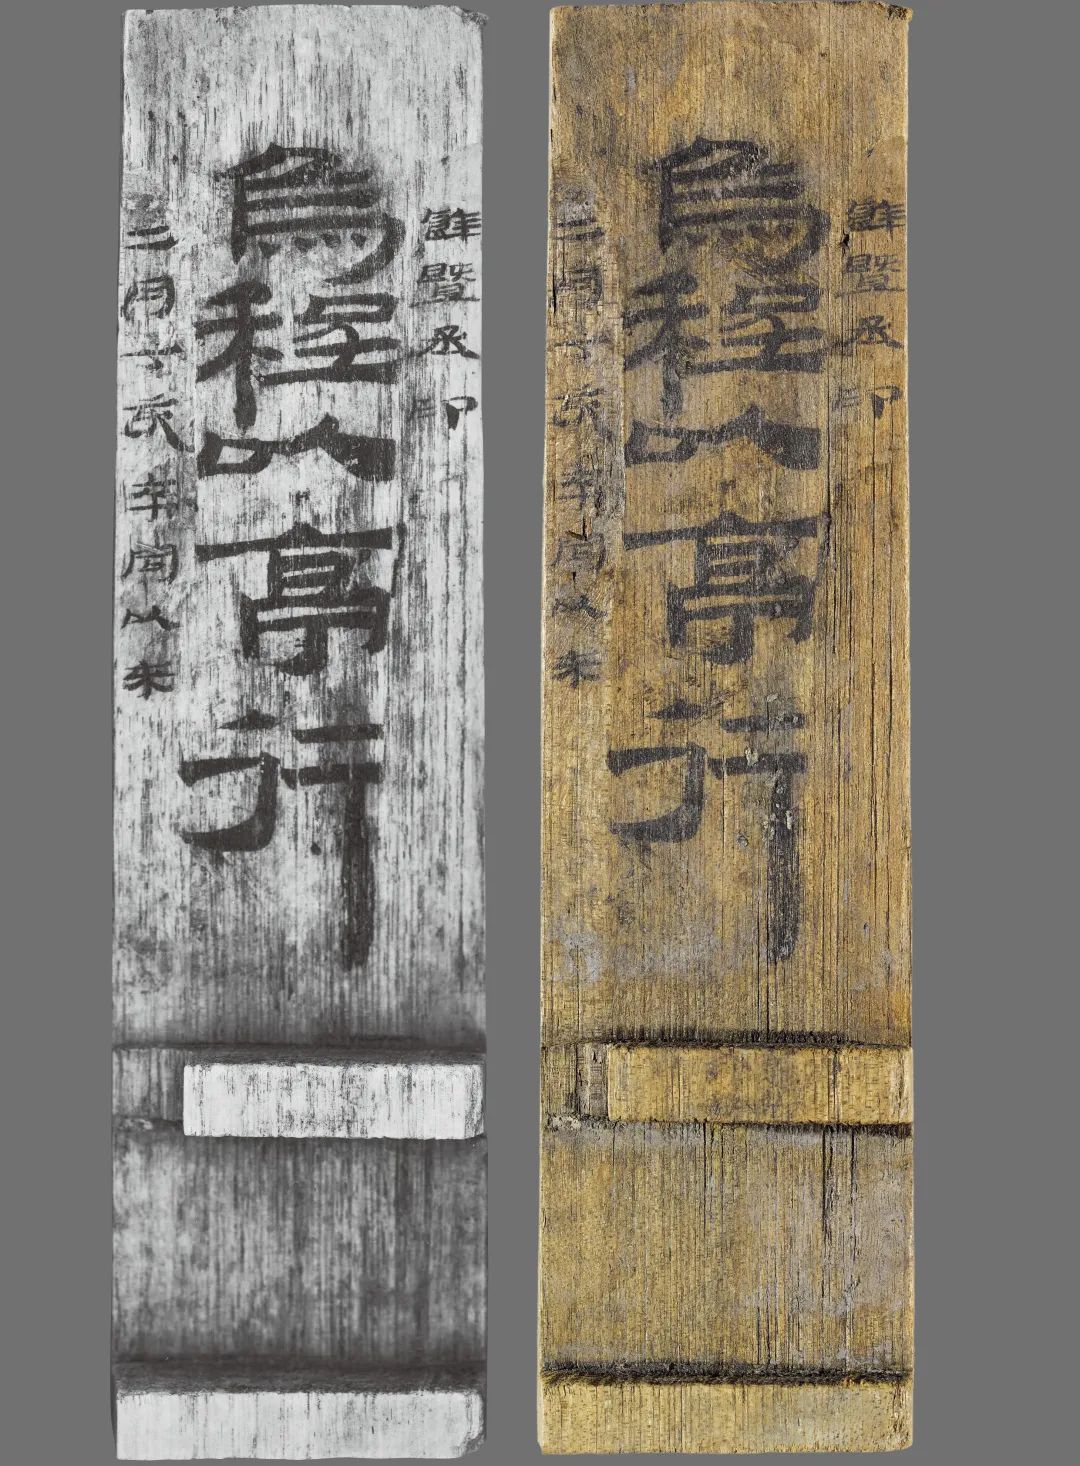 Naskah Kuno di Potongan Bambu Diteliti-Image-4